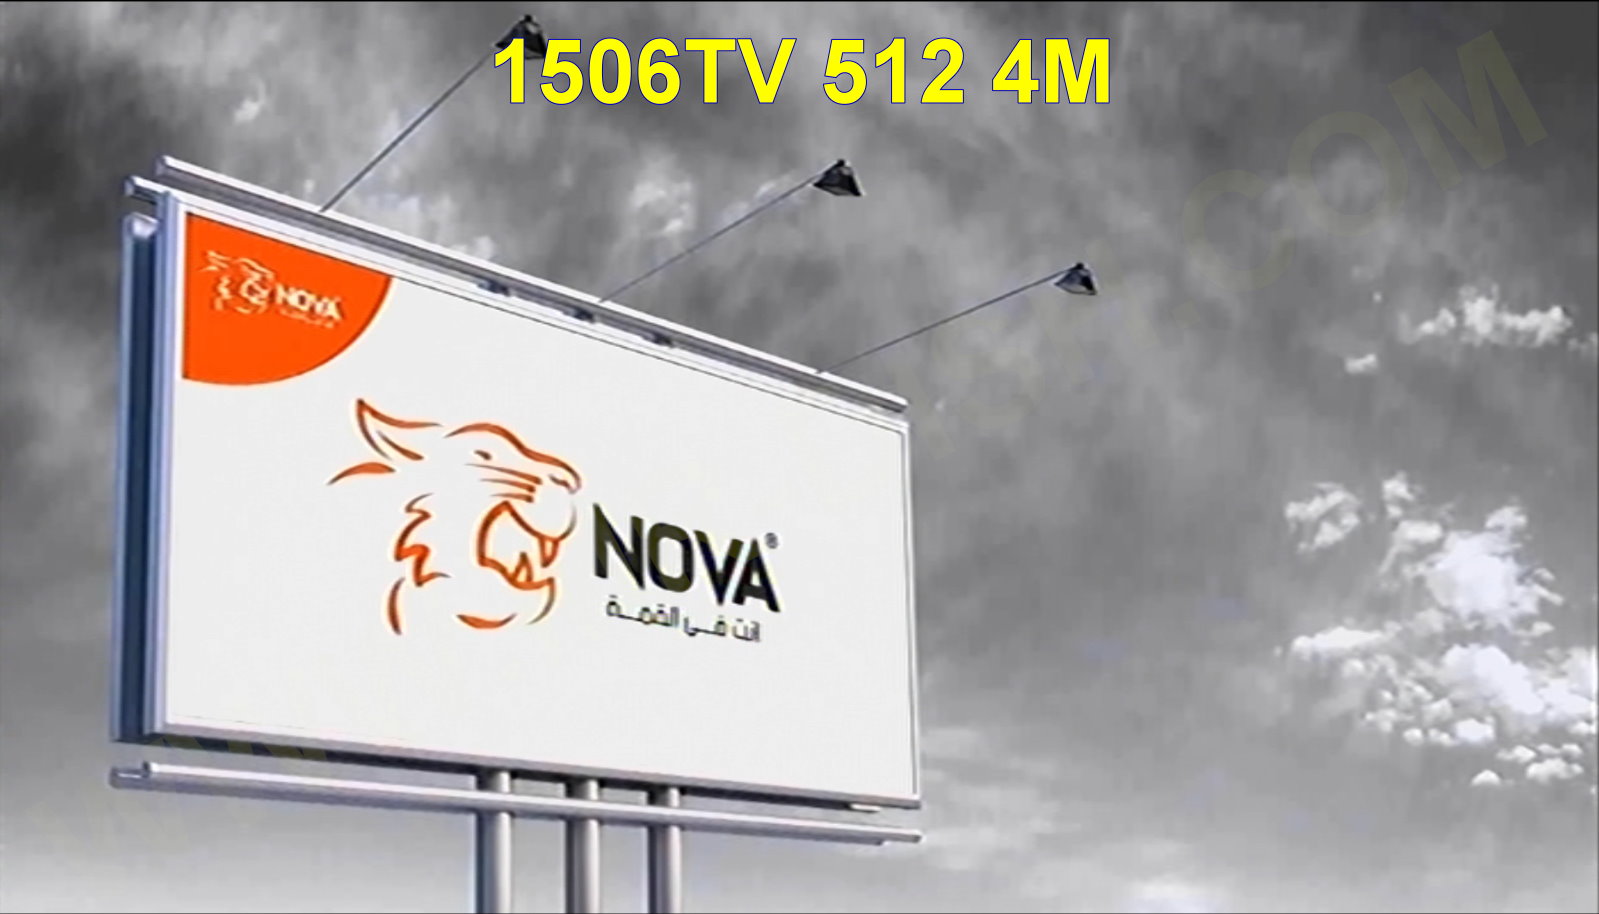 NOVA N400 1506TV 4M SVA3 V11.00.17 NEW SOFTWARE